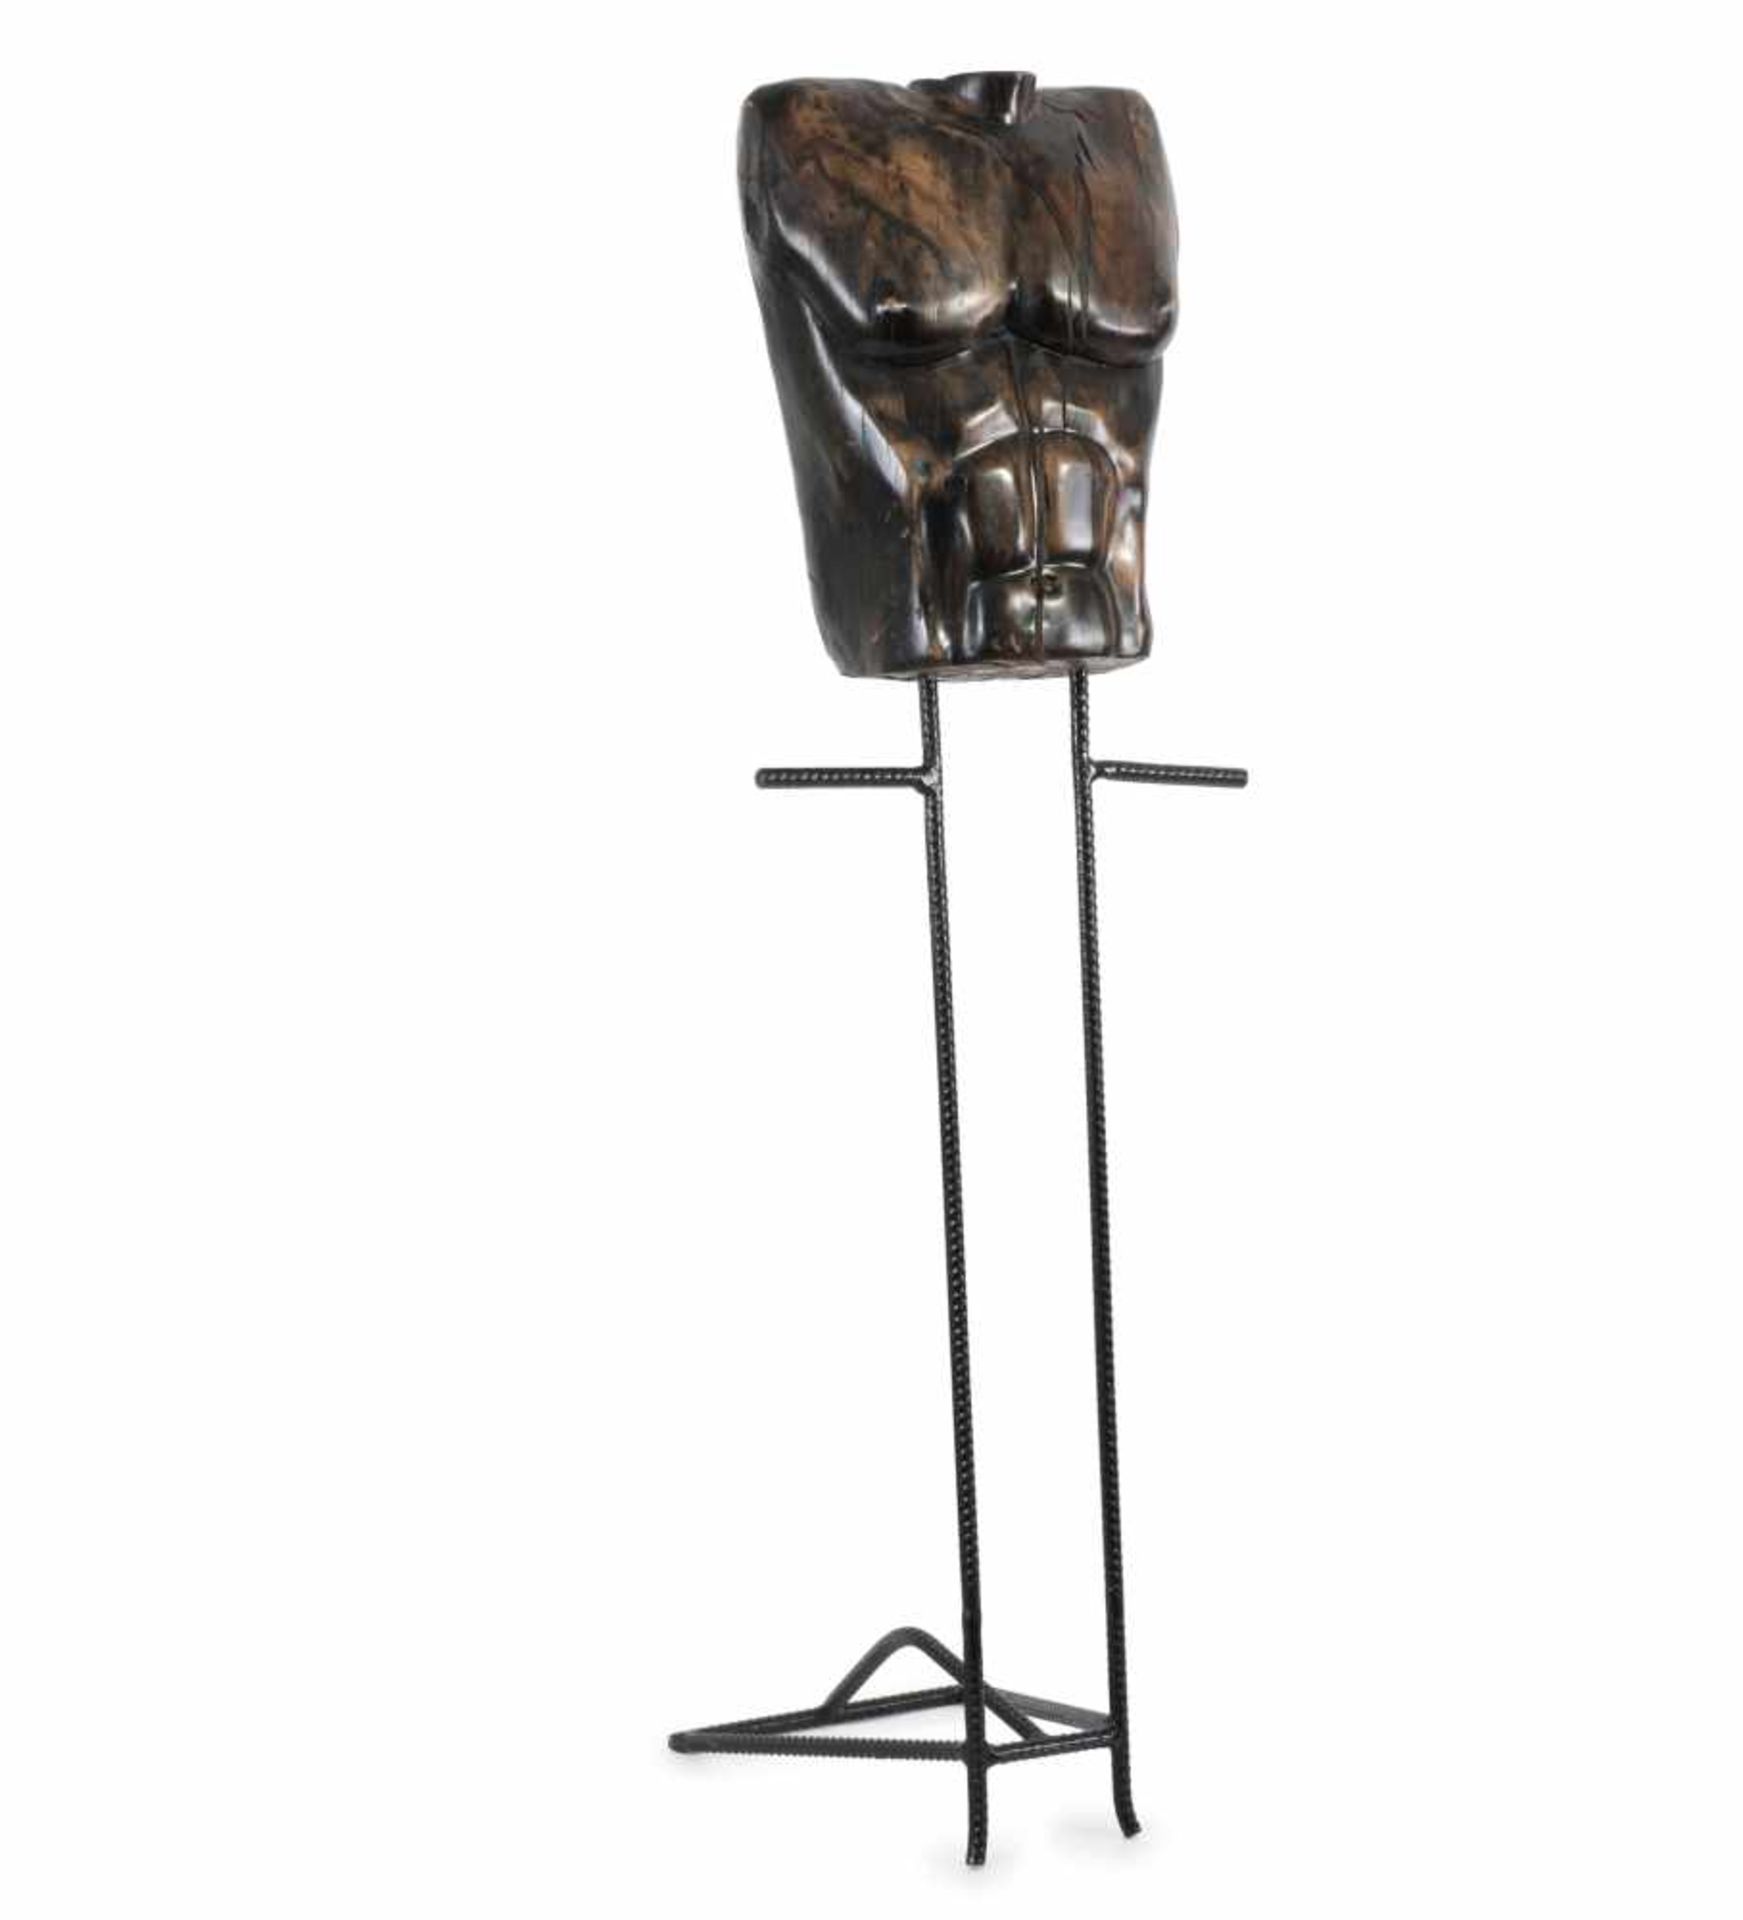 Robert Wettstein Stummer Diener / Skulptur, um 1986 H. 147 x 48 x 40 cm. Anthologie Quartett, Bad